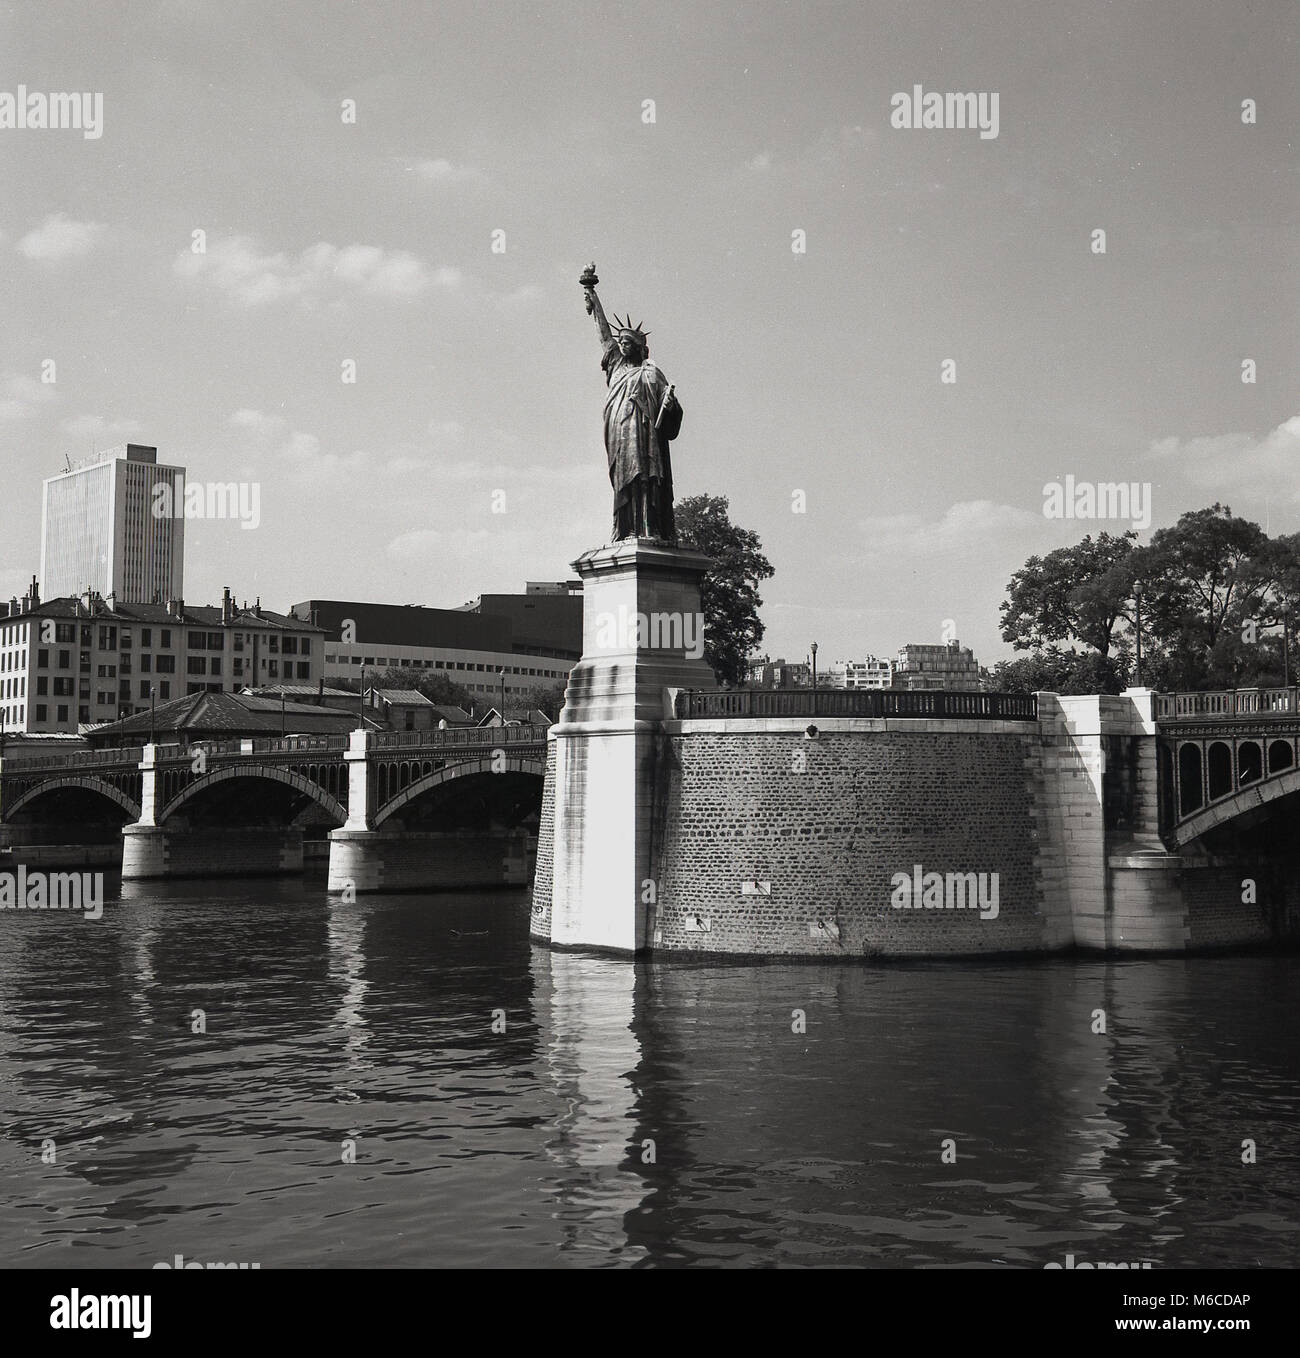 Années 1950, historique, Paris, France, au milieu de la Seine sur le pont, pont de Grenelle, se dresse un quart échelle réplique de la fameuse Statue de la liberté, une statue en bronze étant donné les USA par les Français et qui s'élève sur Liberty Island à New York. Le pont sur la photo a été remplacé au milieu des années 60.. Banque D'Images